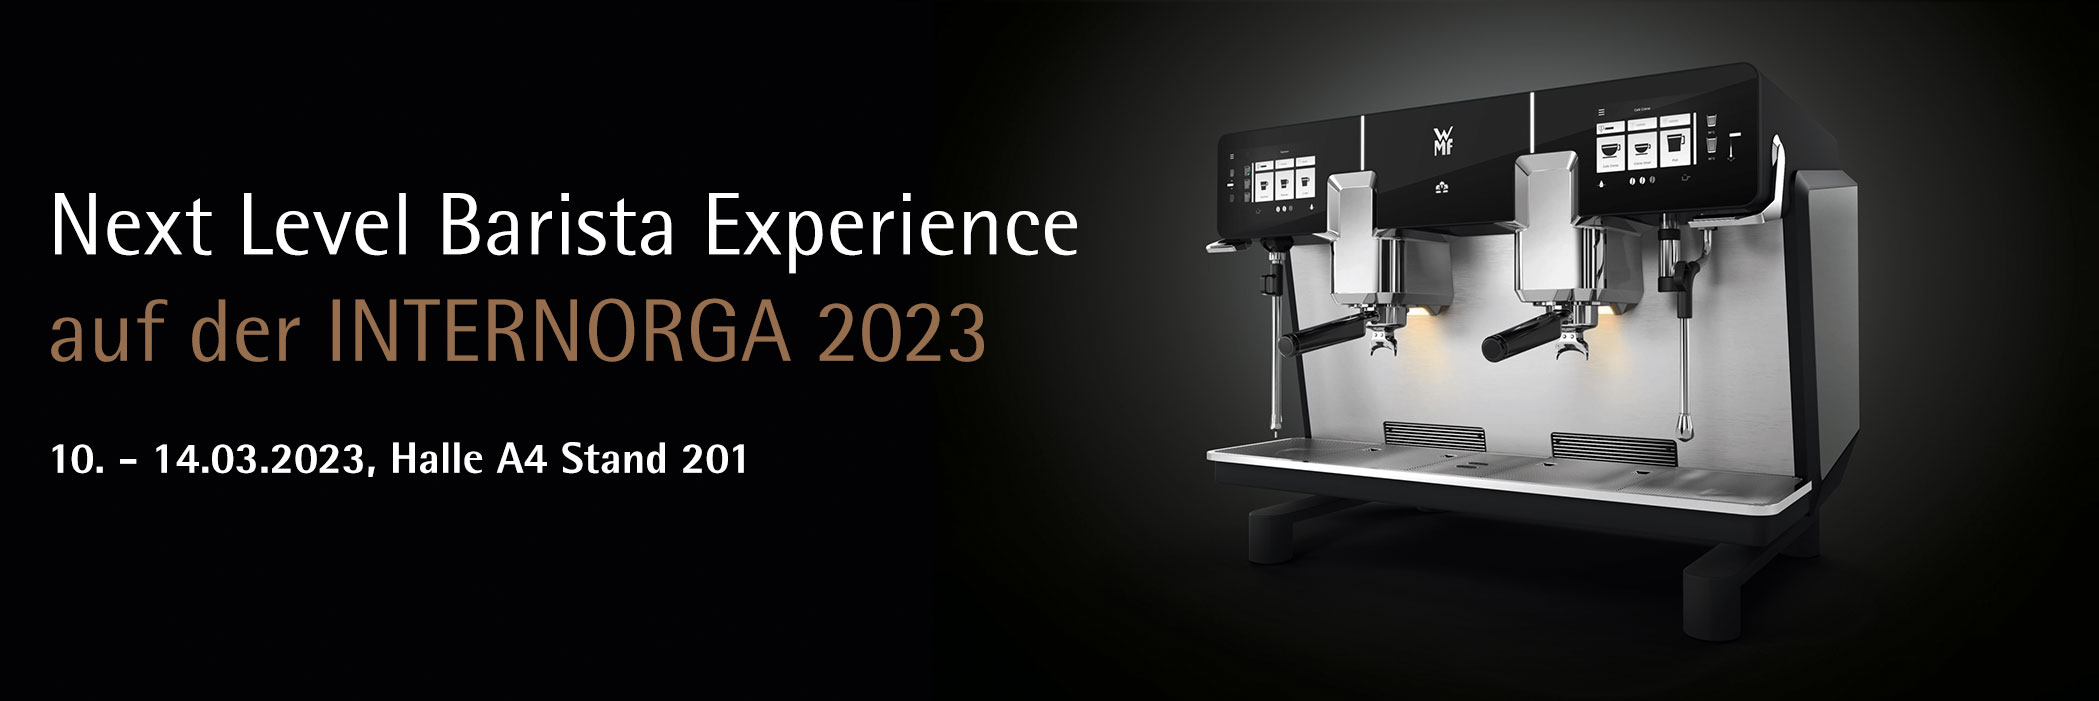 Next Level Barista Experience auf der INTERNORGA 2023